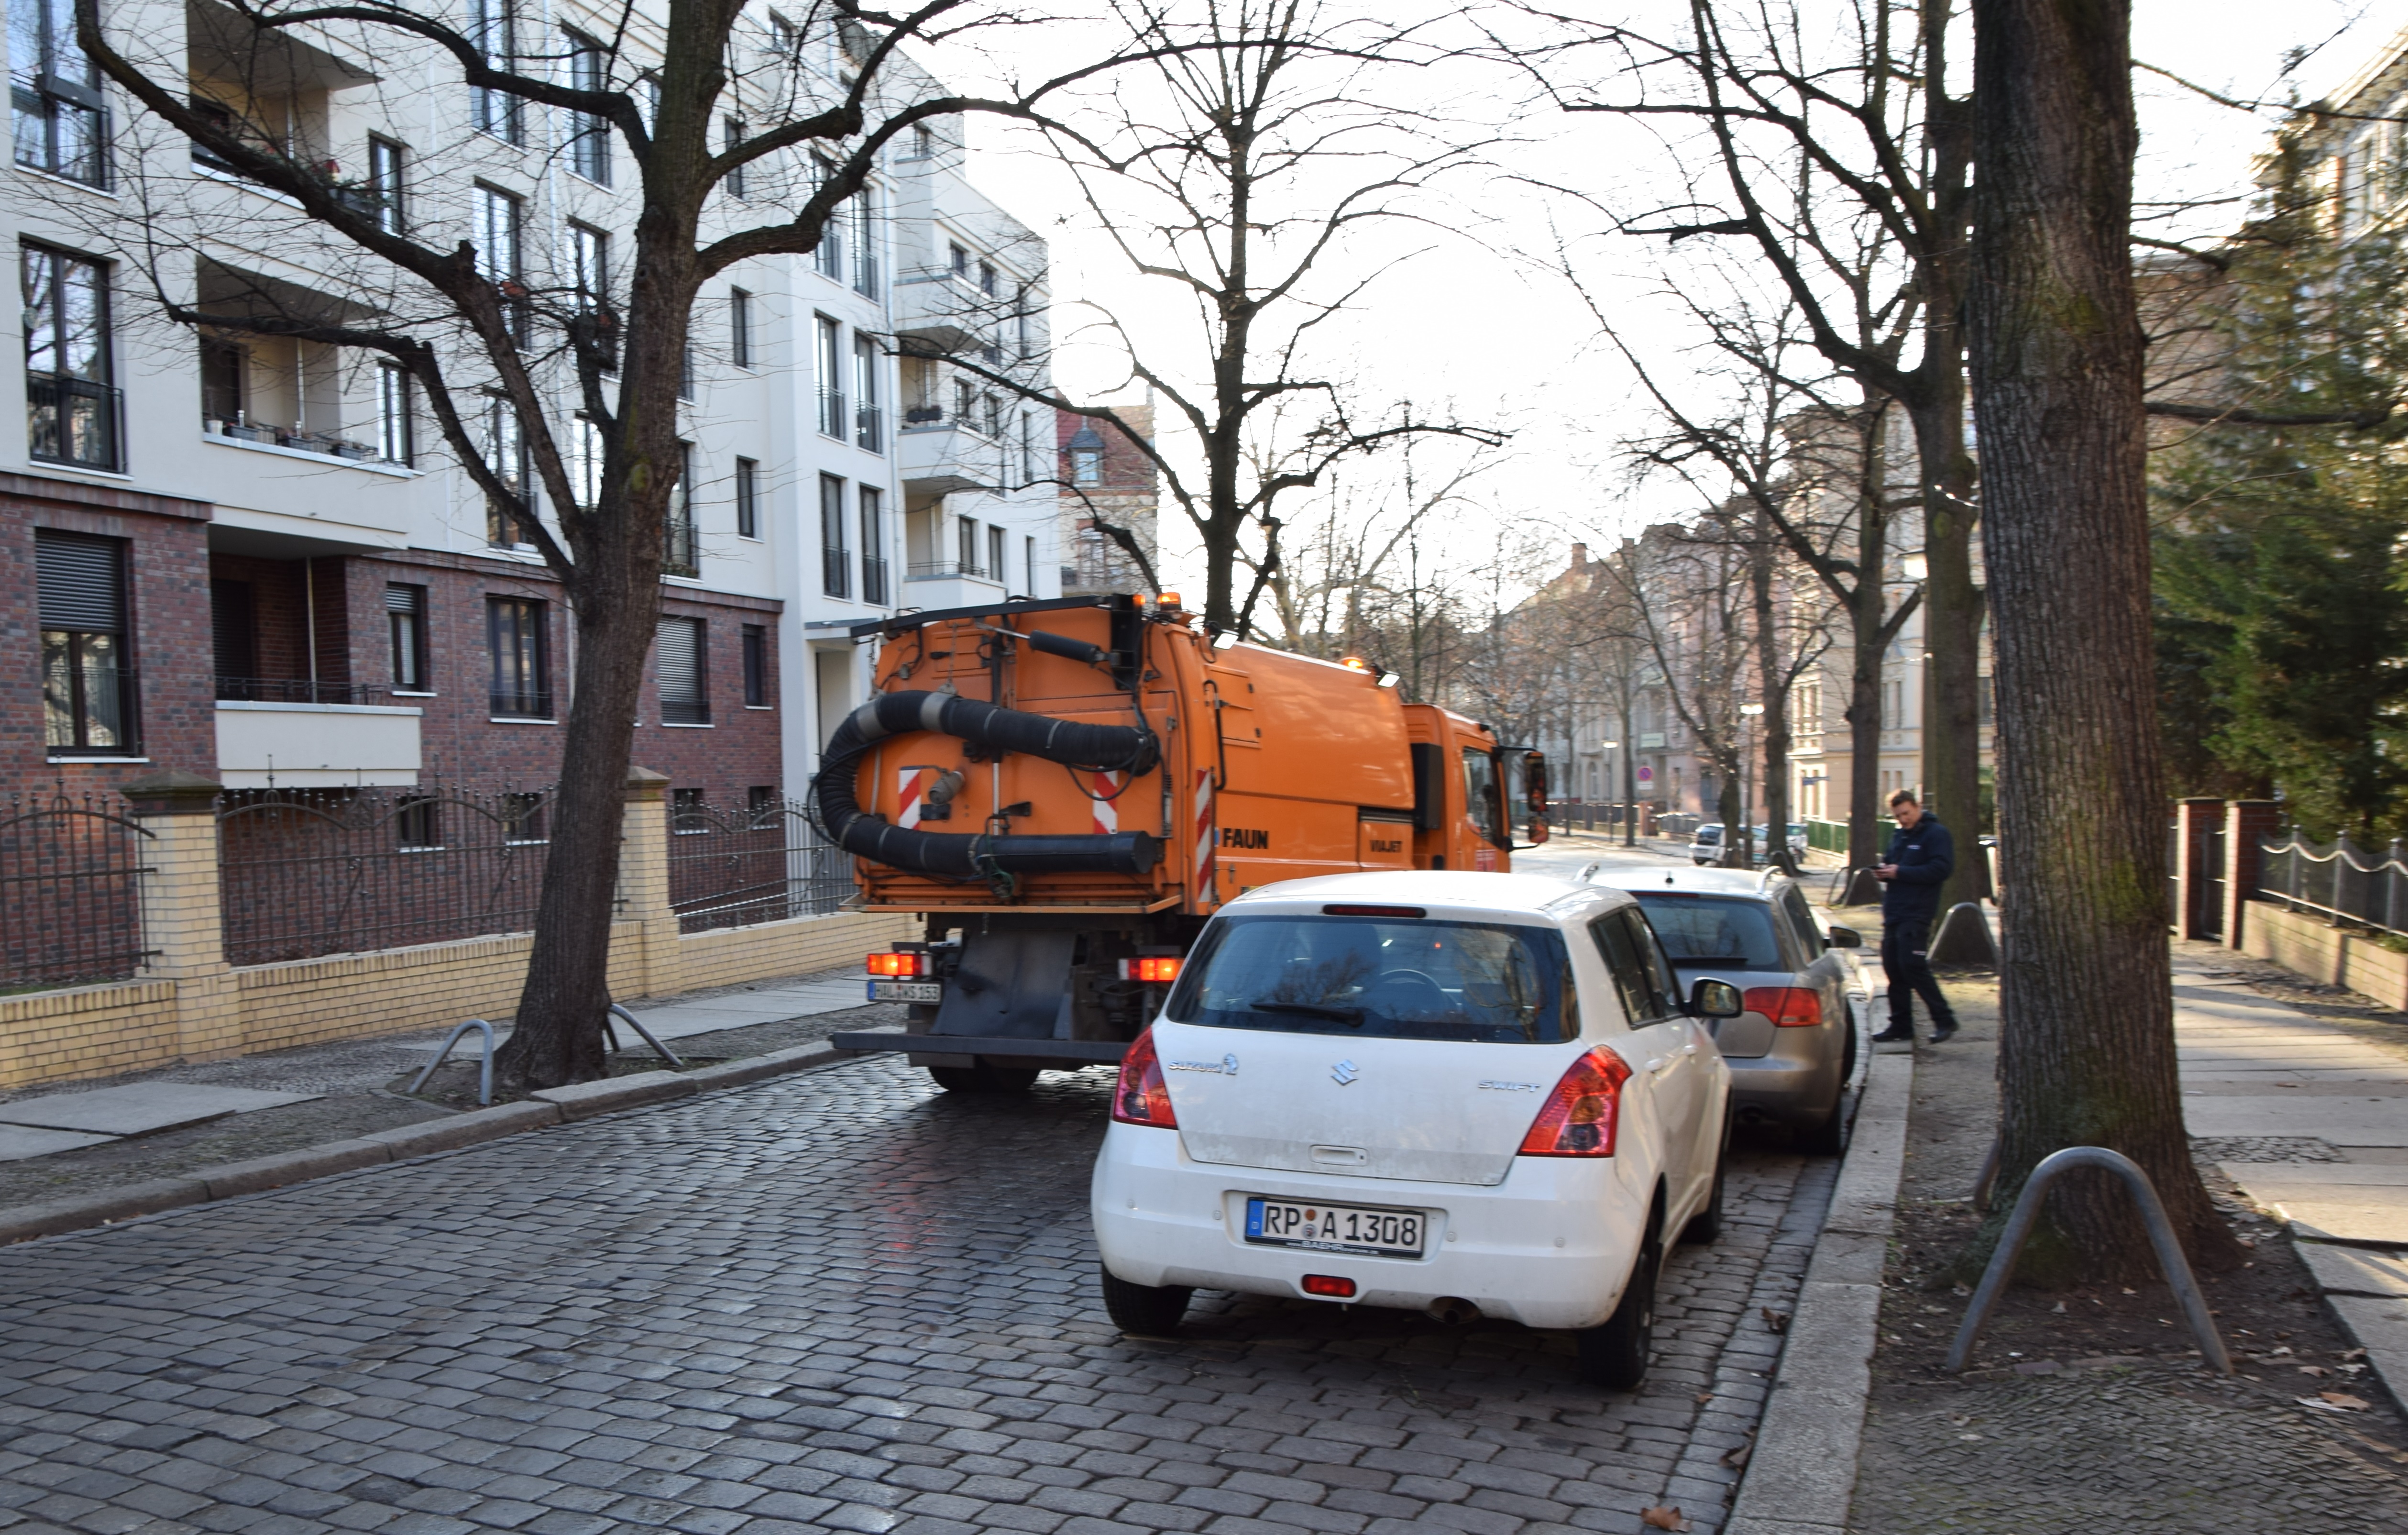 Auf dem Bild ist eine gepflasterte Straße in einem Wohngebiet abgebildet. Am rechten Fahrbahnrand parken ein weißes und ein silbernes Auto, die orangefarbene Straßenreinigungsmaschine der HWS muss am linken Fahrbahnrand fahren, um den Autos auszuweichen.